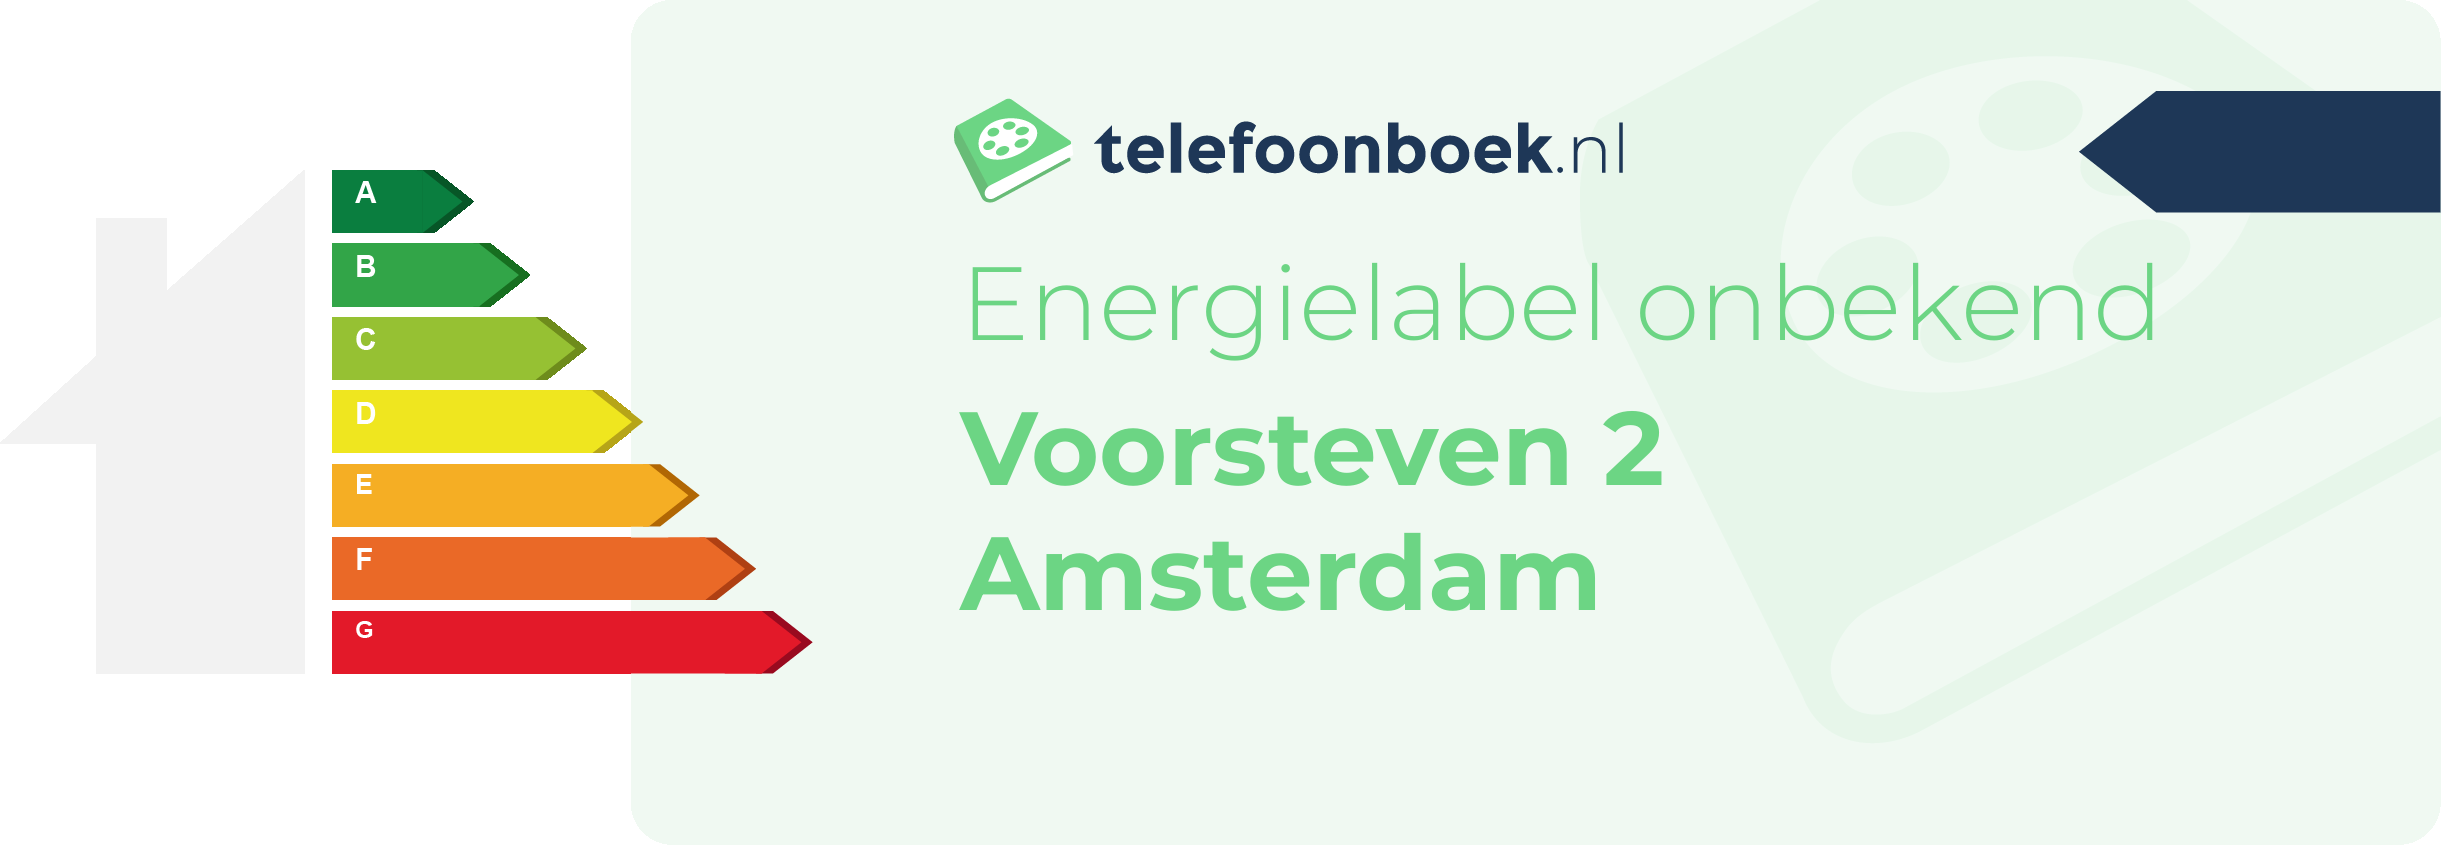 Energielabel Voorsteven 2 Amsterdam